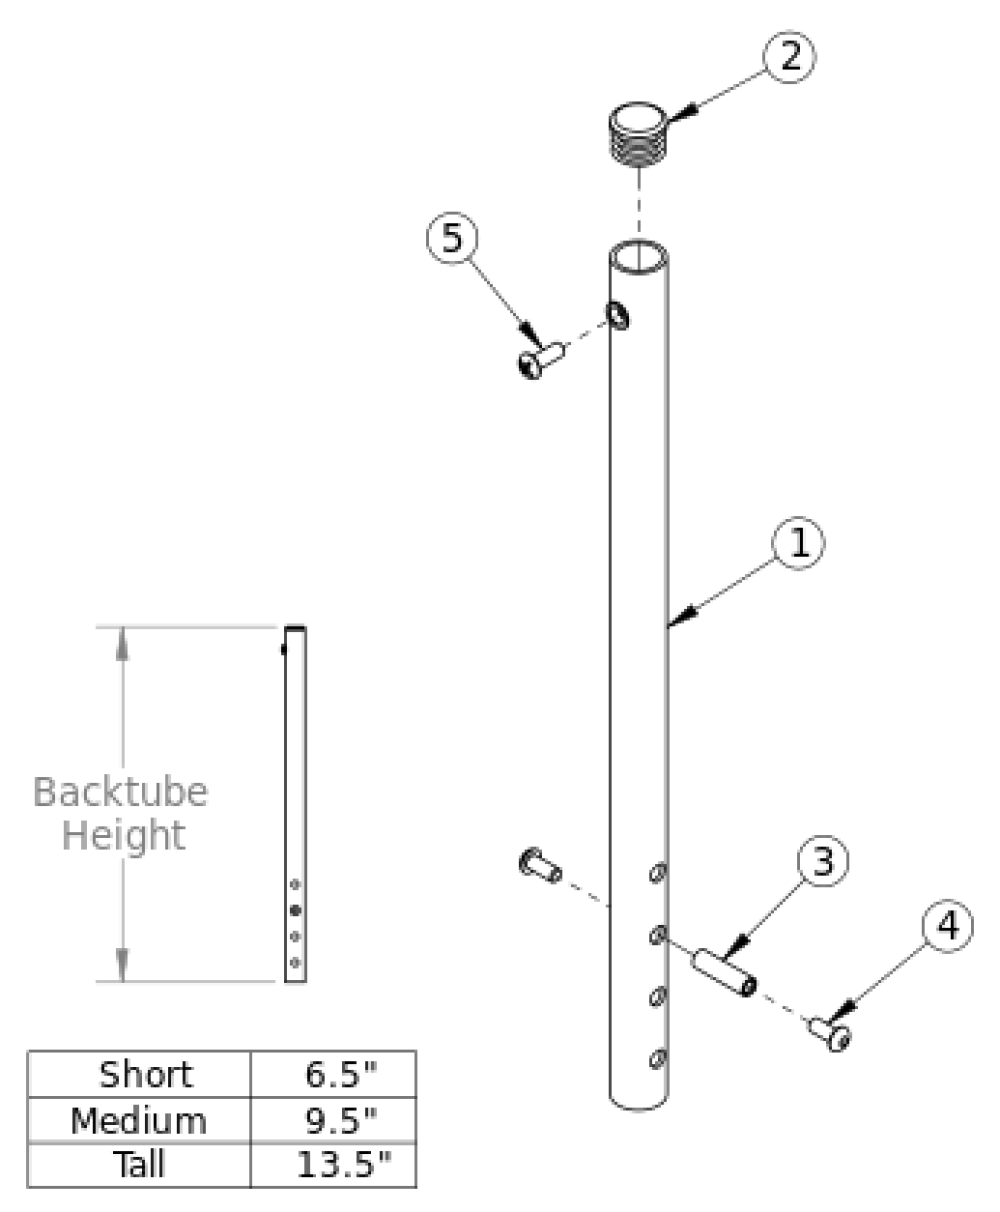 Rigid Backtube parts diagram